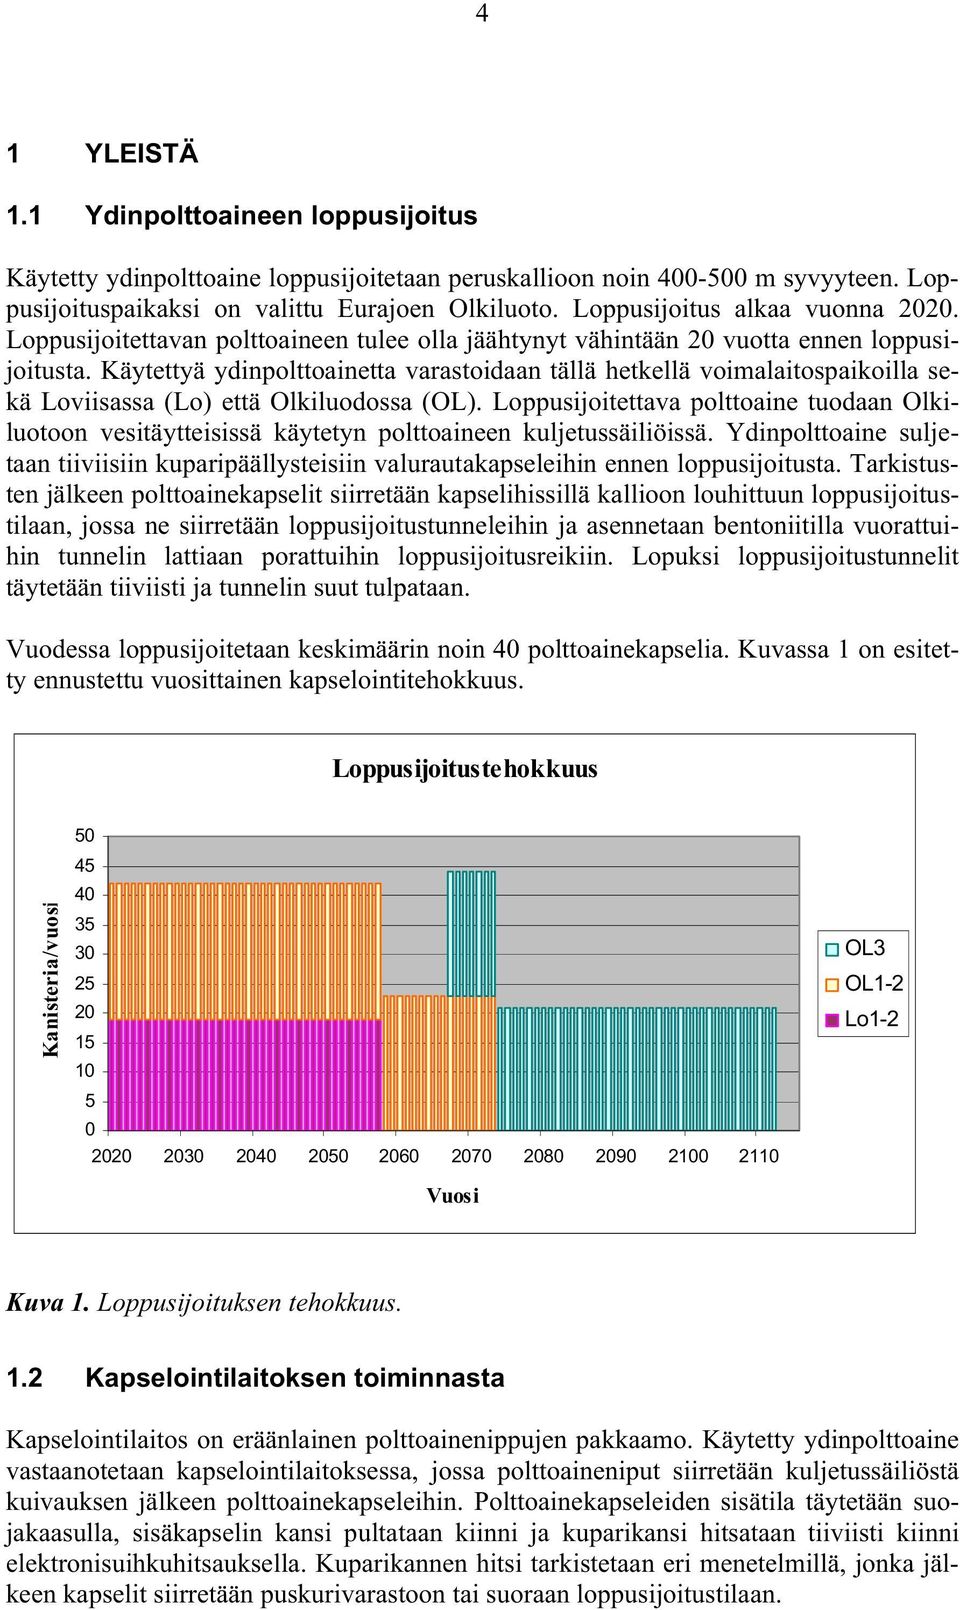 Käytettyä ydinpolttoainetta varastoidaan tällä hetkellä voimalaitospaikoilla sekä Loviisassa (Lo) että Olkiluodossa (OL).